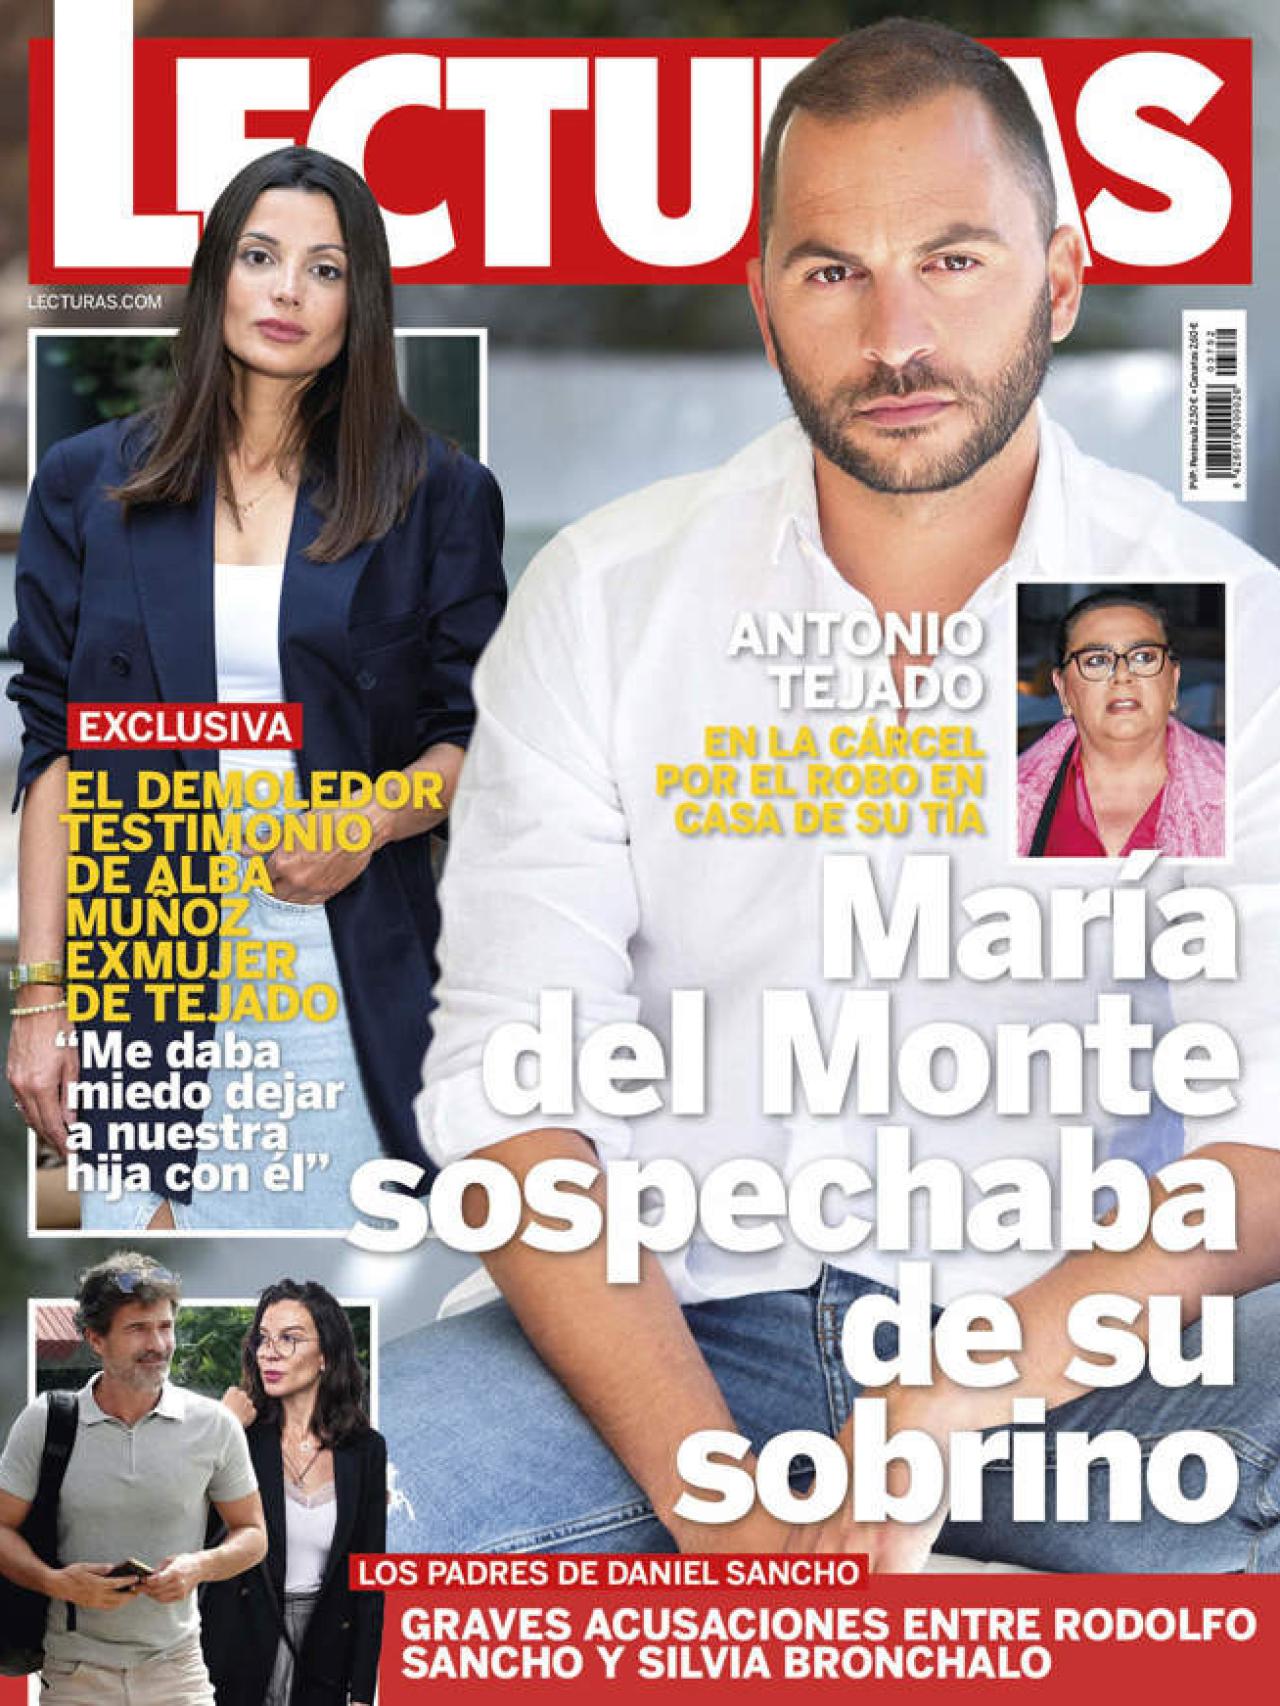 La portada de la revista 'Lecturas' donde Alba Muñoz rompe su silencio.